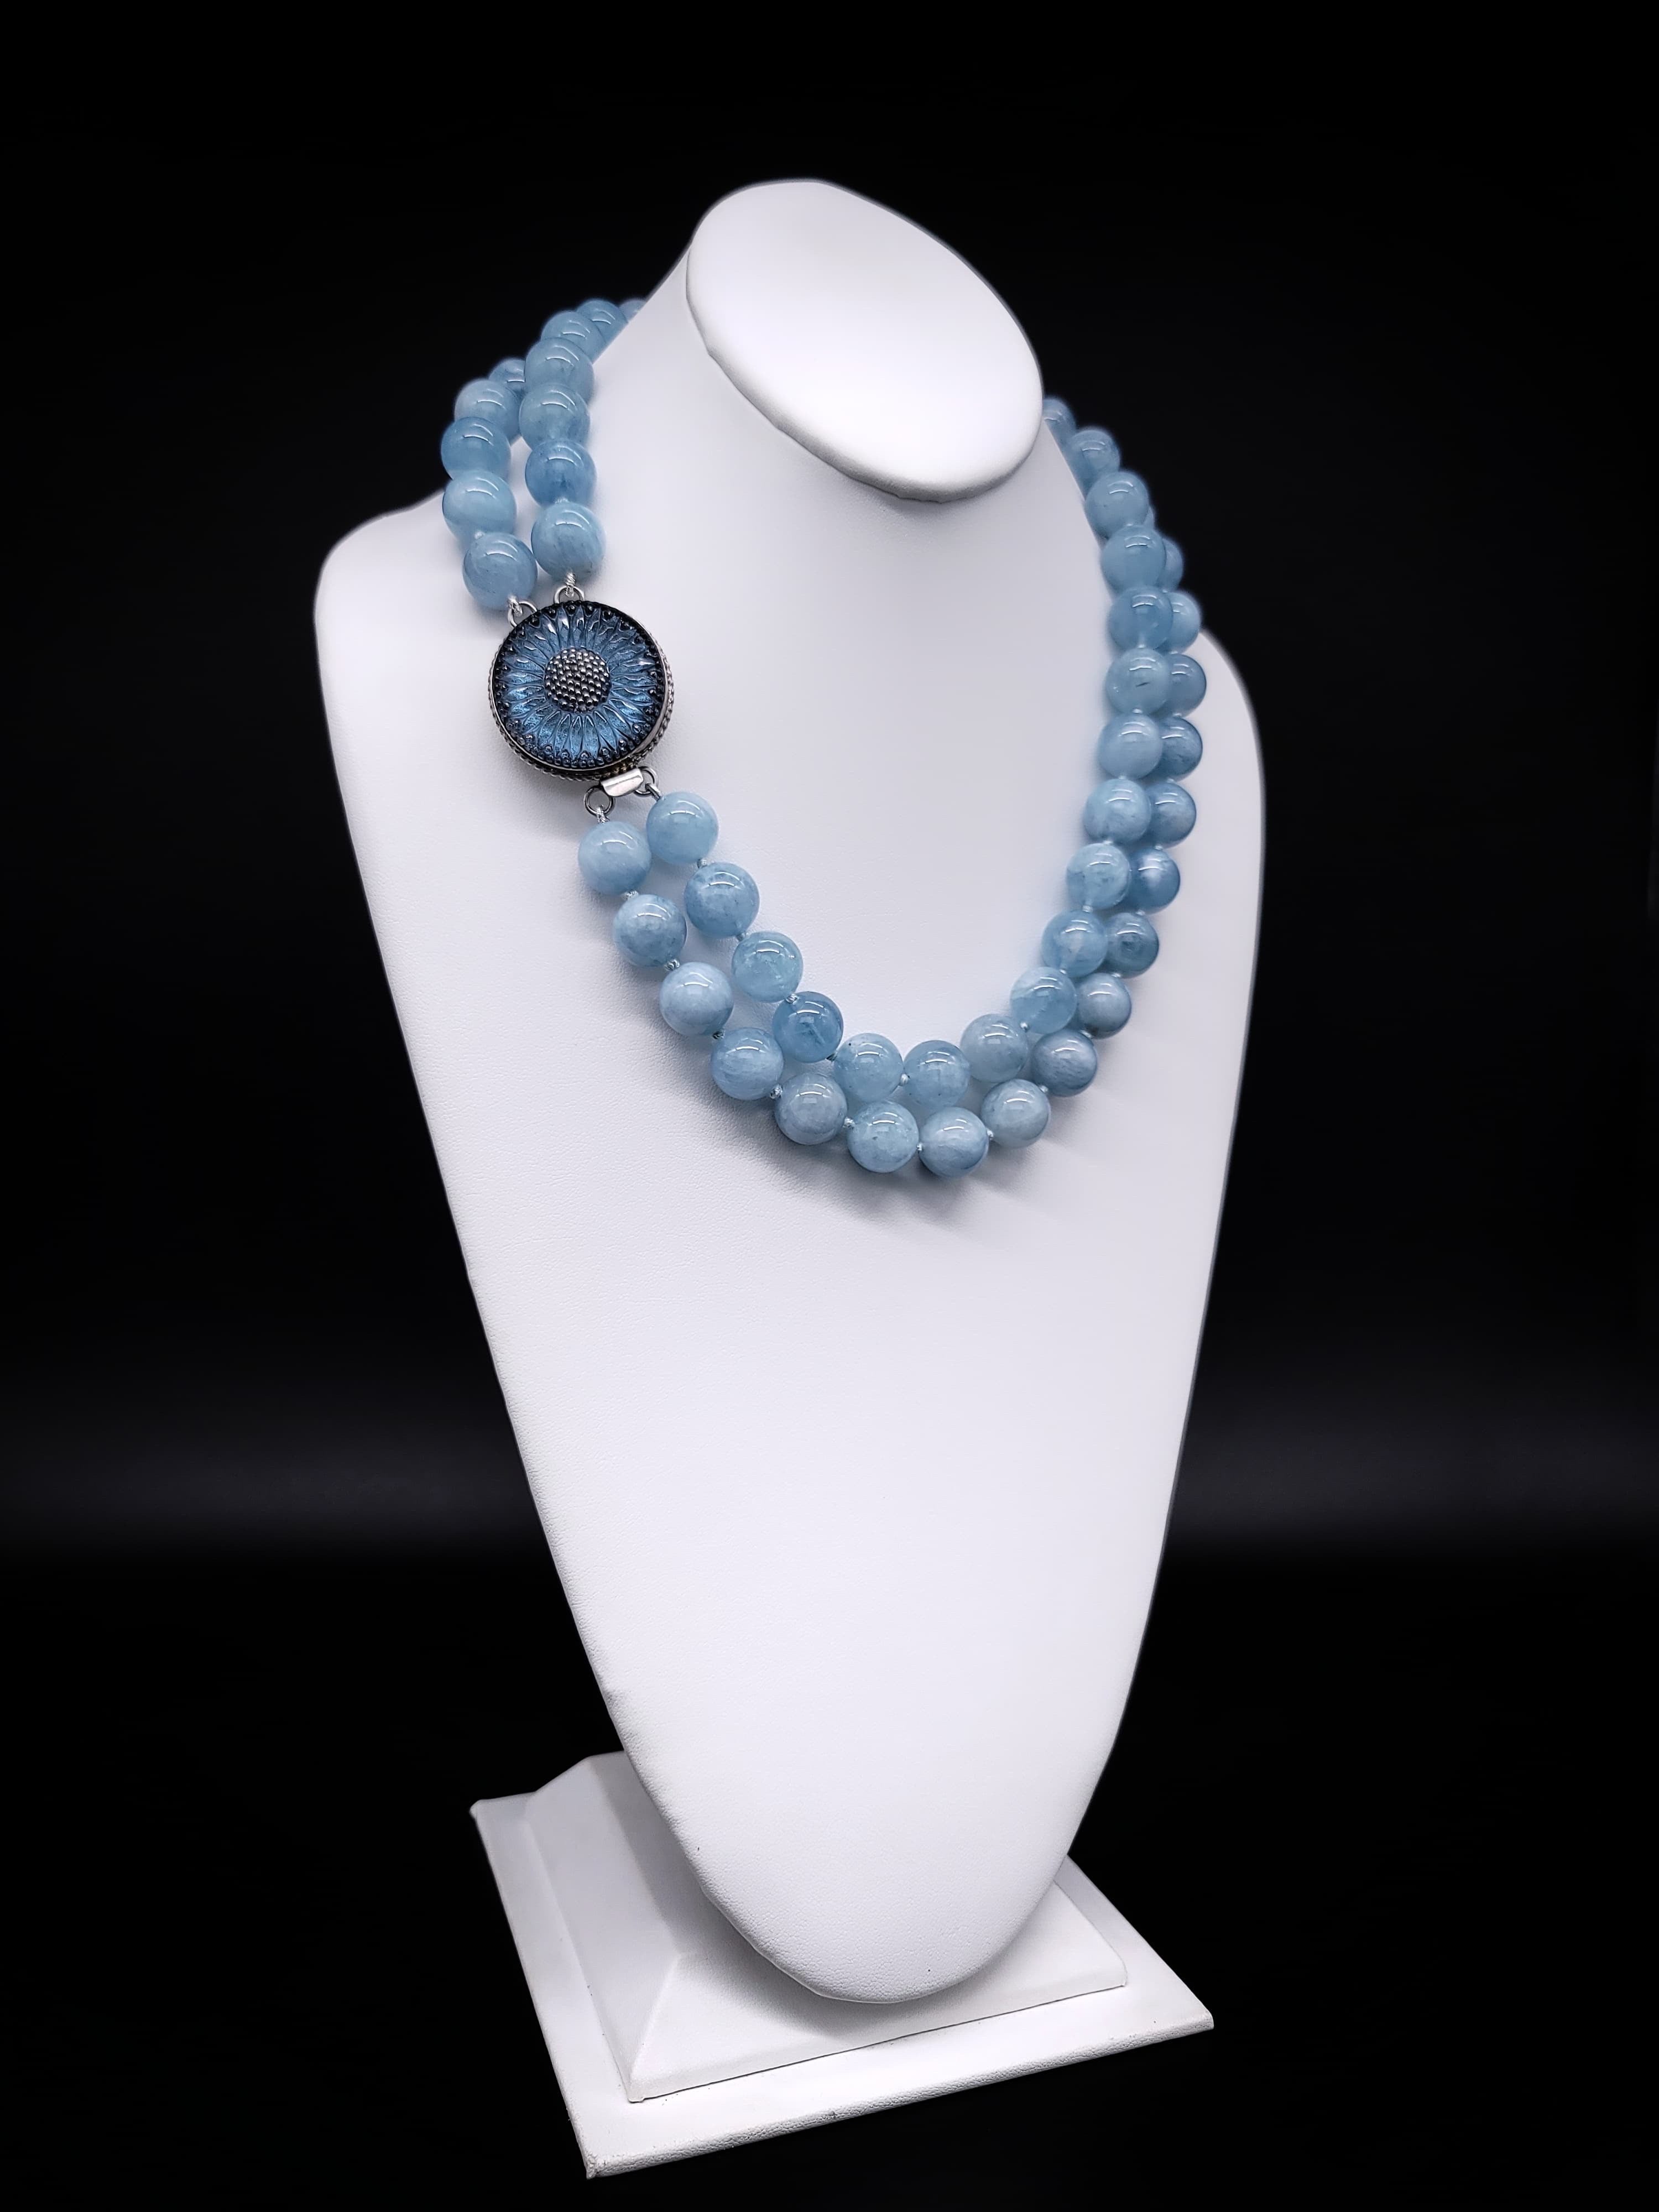 Aquamarinblaue Beryll-Halskette ist einfach wunderschön.